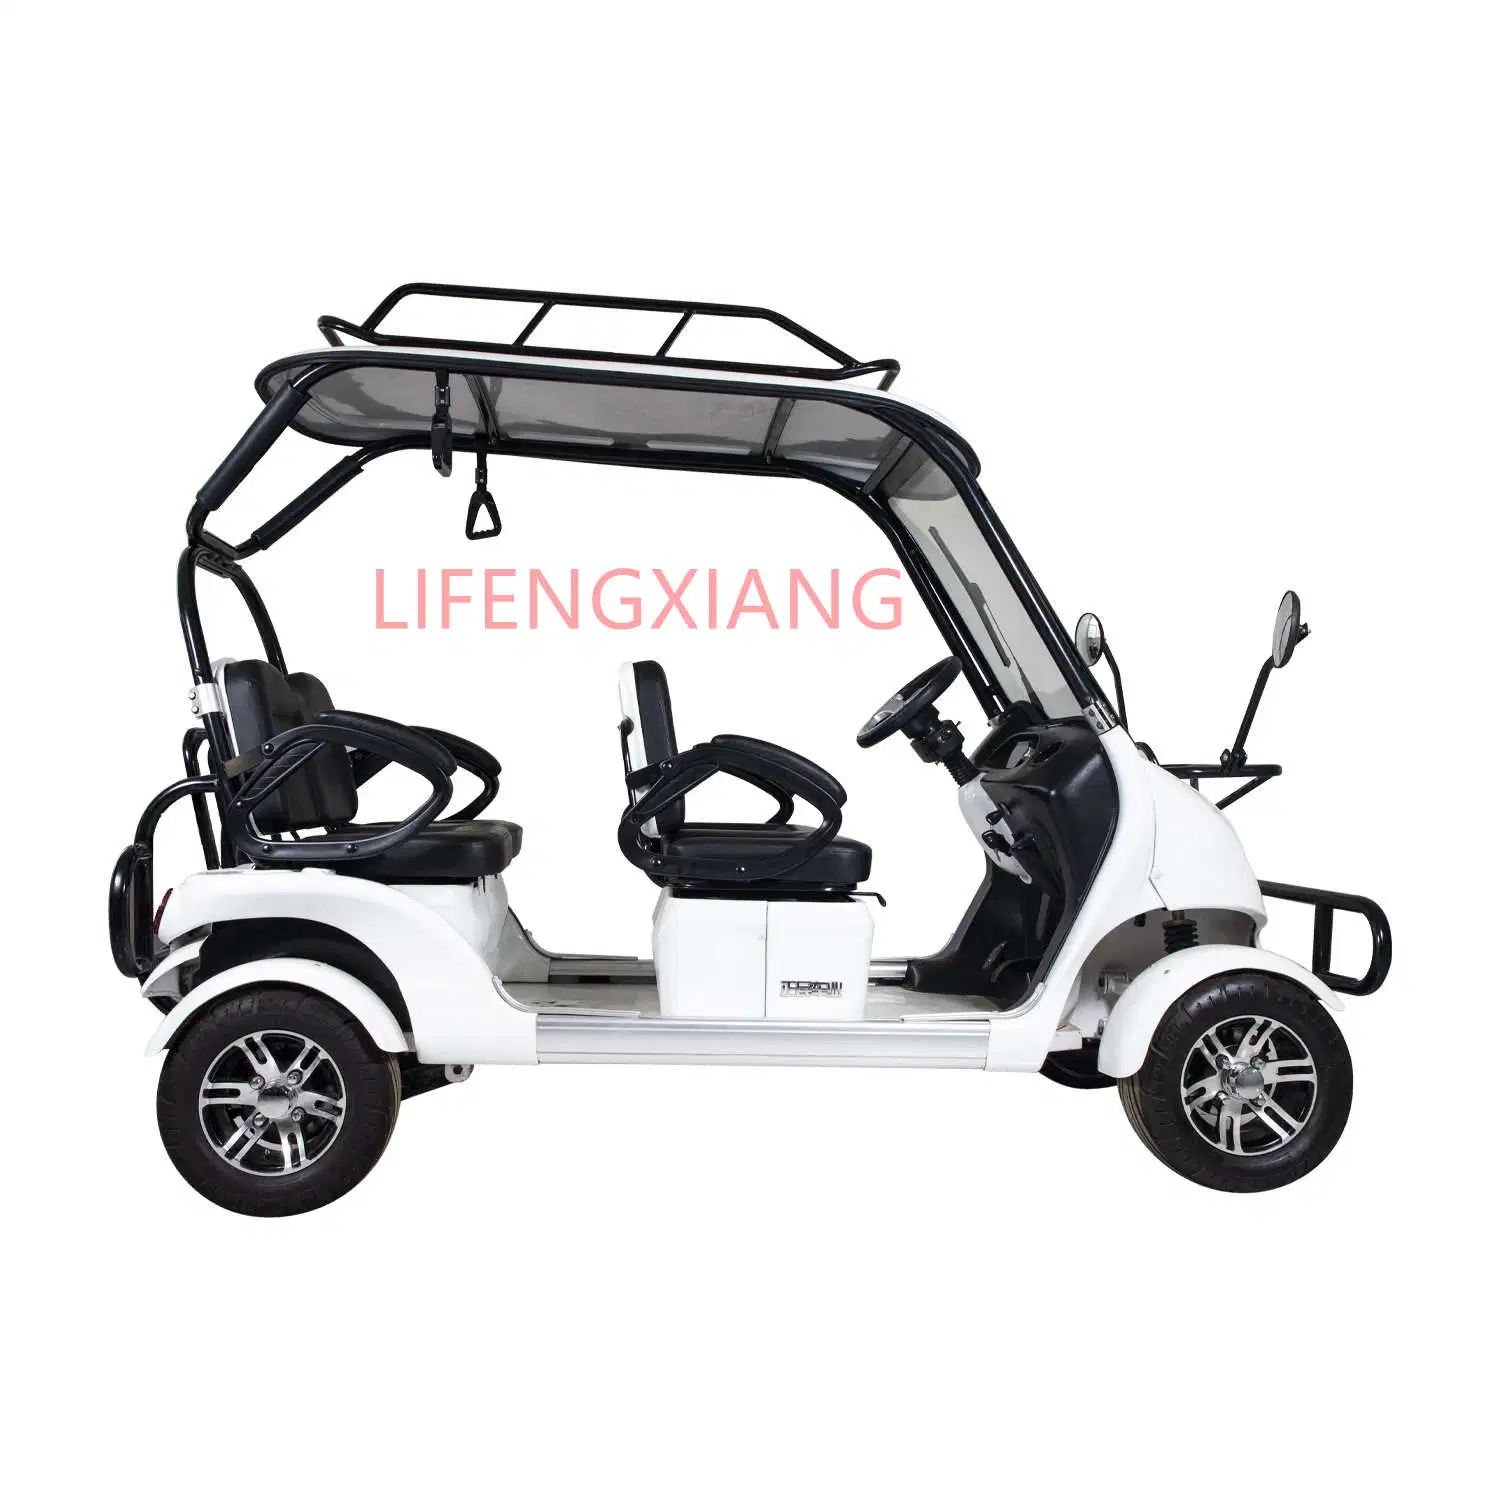 La CE aprobó una nueva batería de adultos de llegada 4 asientos de Turismo Club Alquiler de carrito de golf eléctrico